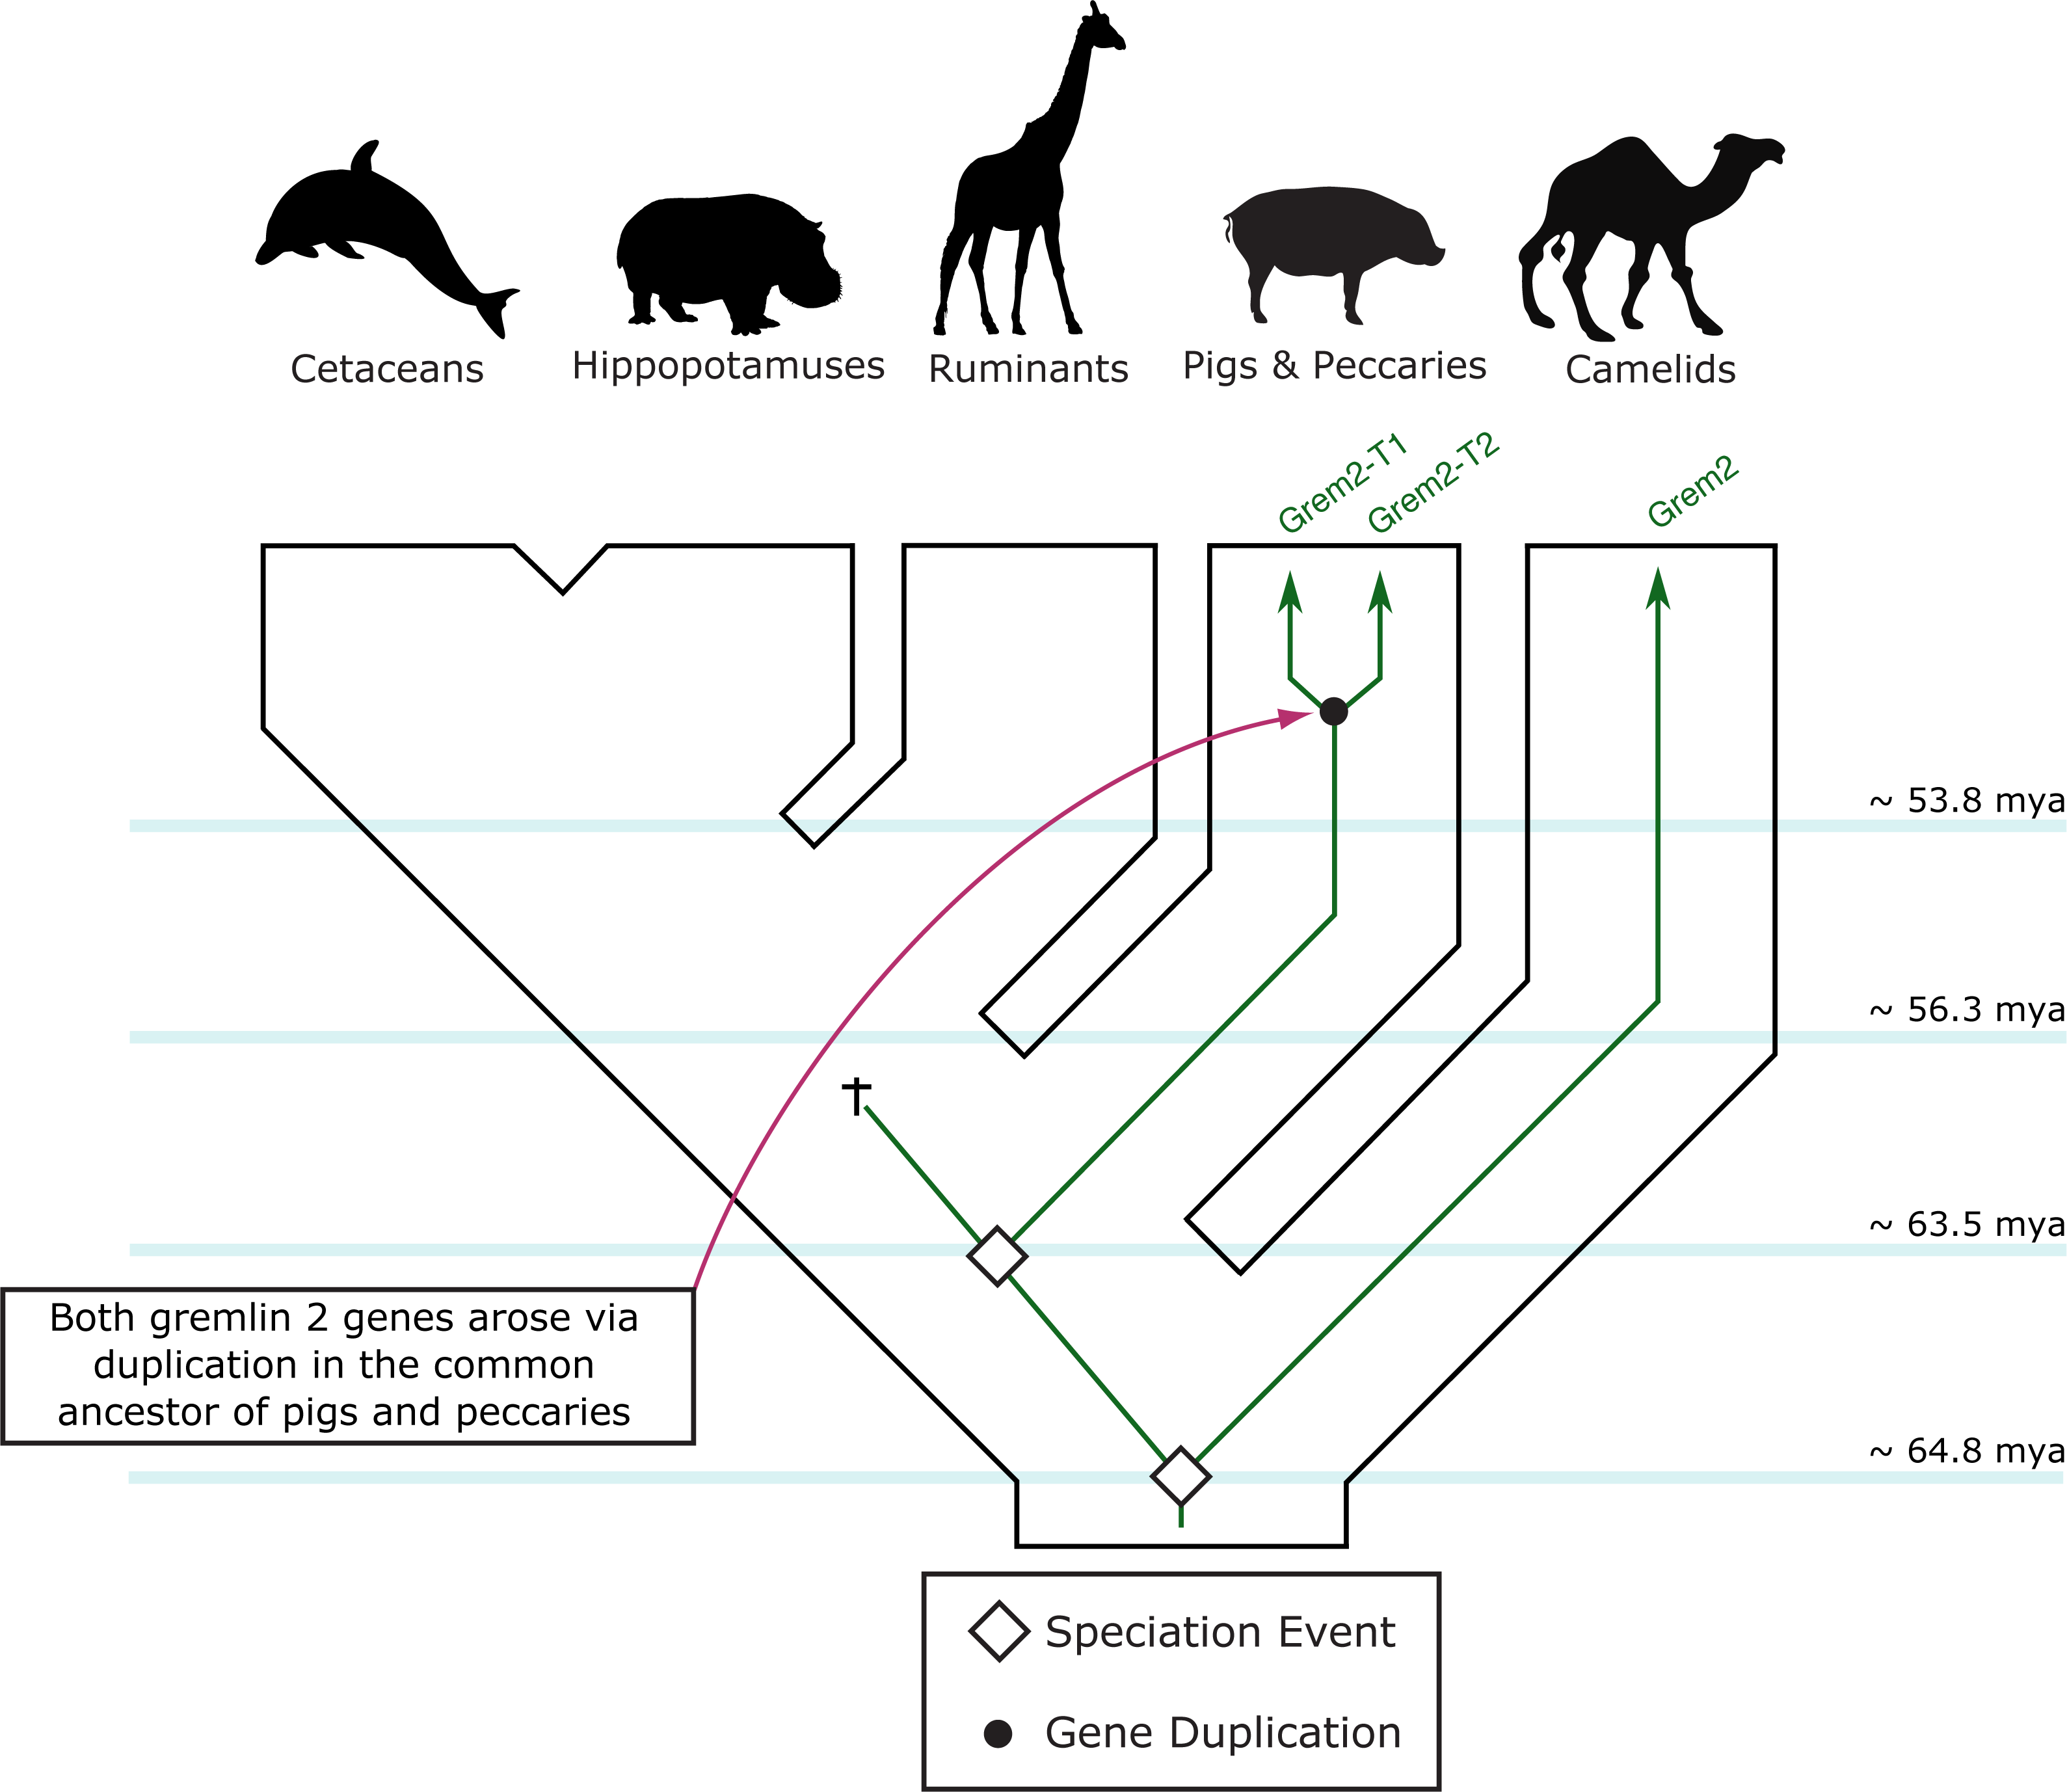 Evolution of gremlin 2 in cetartiodactyl mammals: gene loss